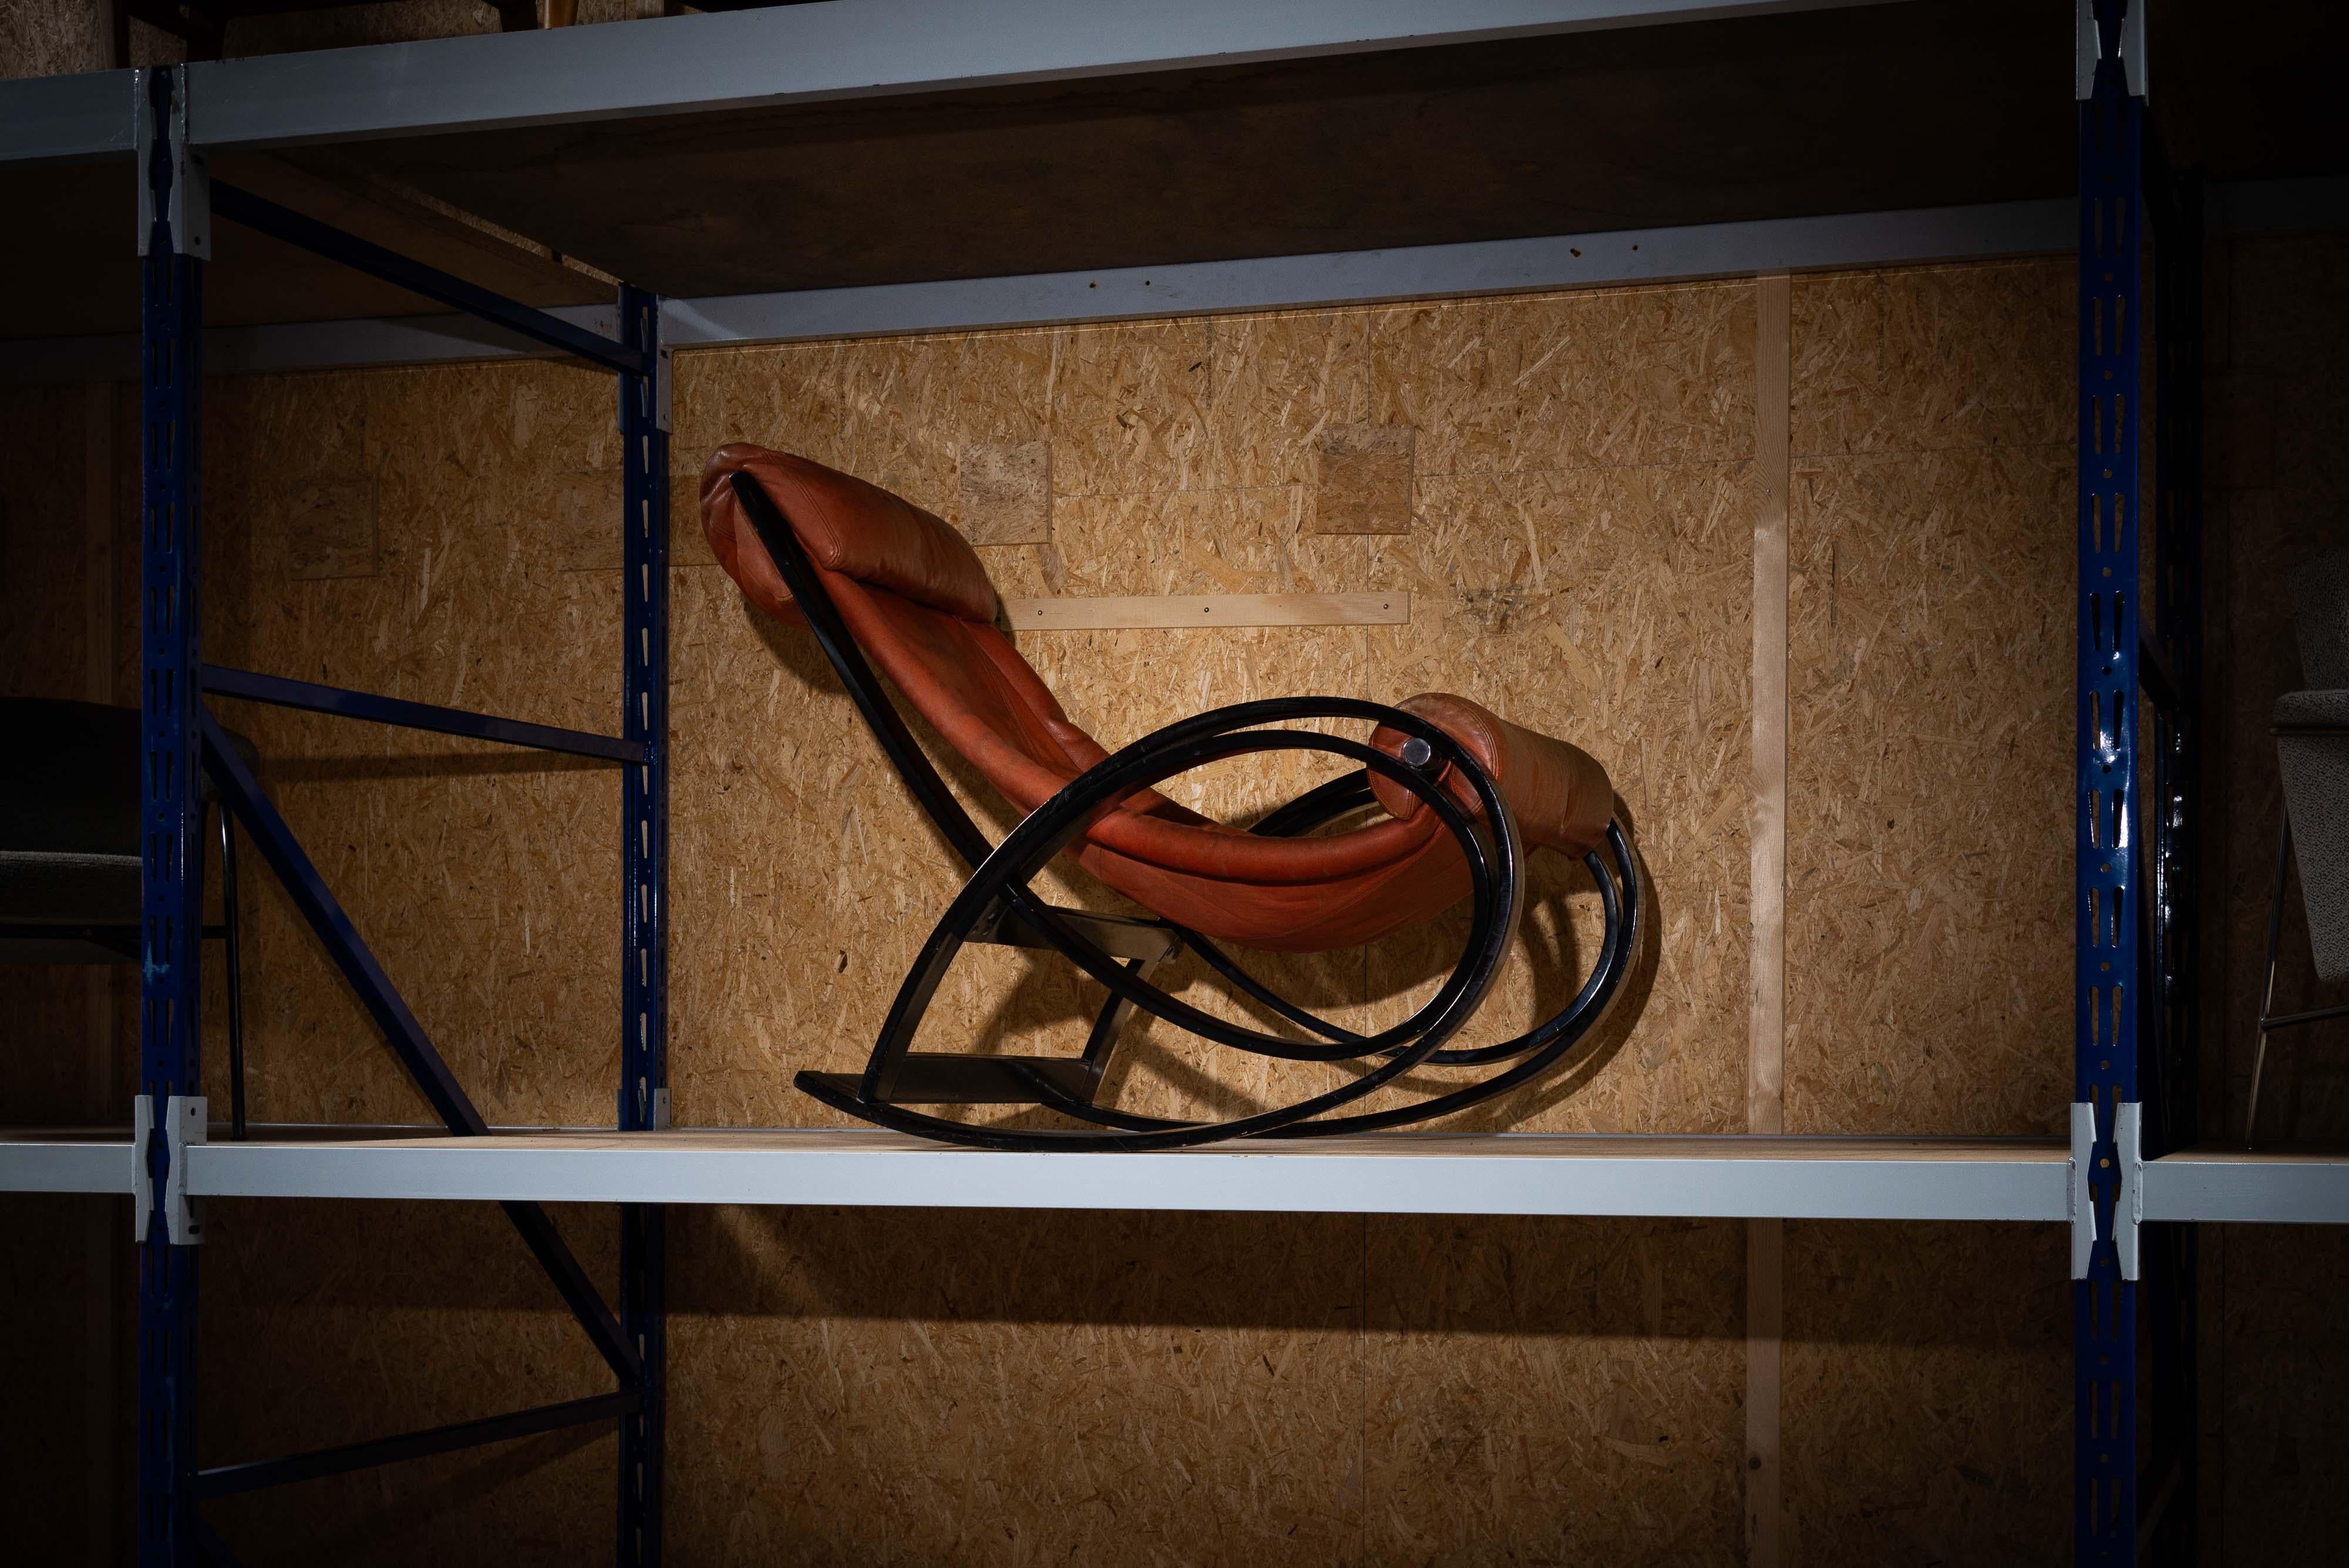 Chaise à bascule Sgarsul emblématique conçue par Gae Aulenti et fabriquée par Poltronova en Italie en 1962. Il est fabriqué en contreplaqué de bouleau et présente une finition noire brillante qui lui confère un aspect moderne et élégant. Cette